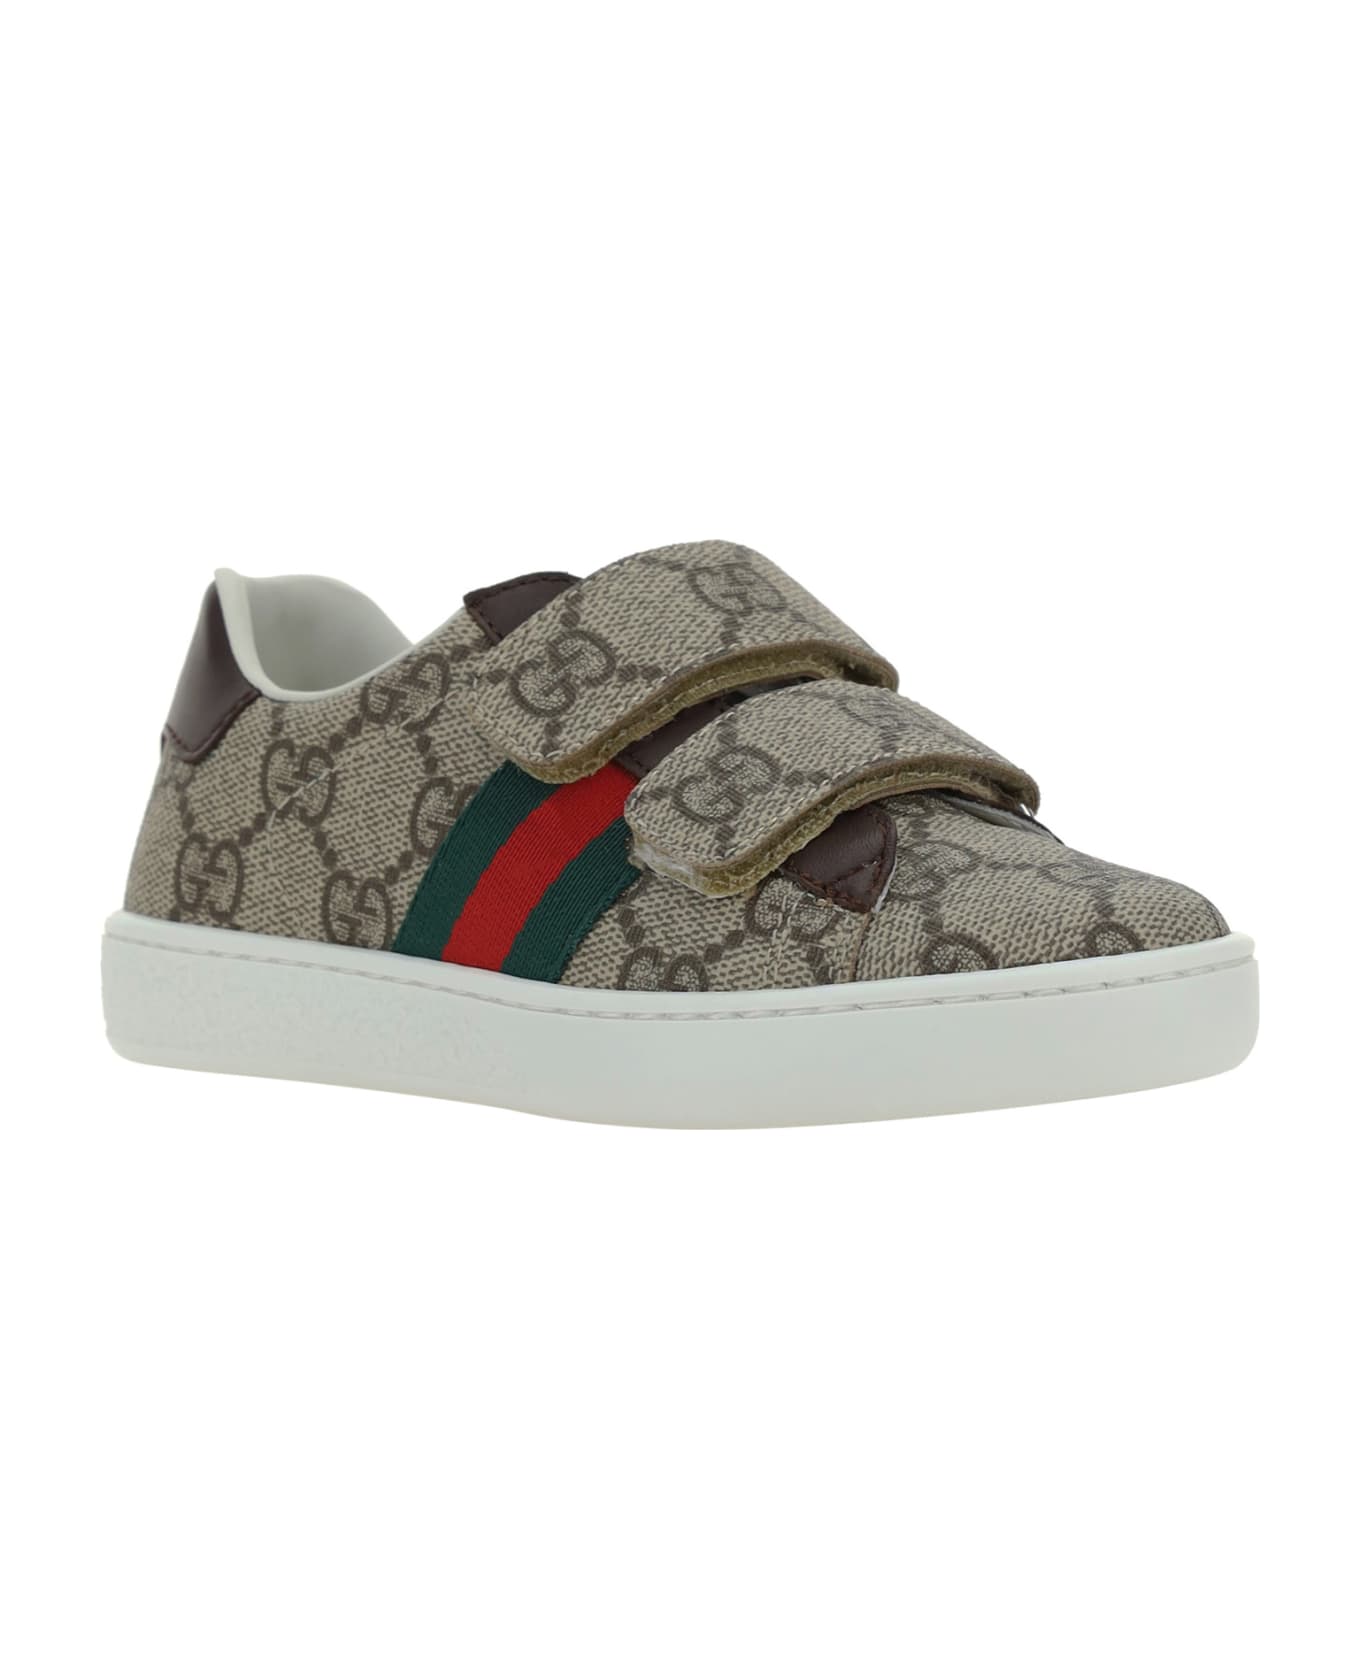 Gucci Sneakers For Boy - MultiColour